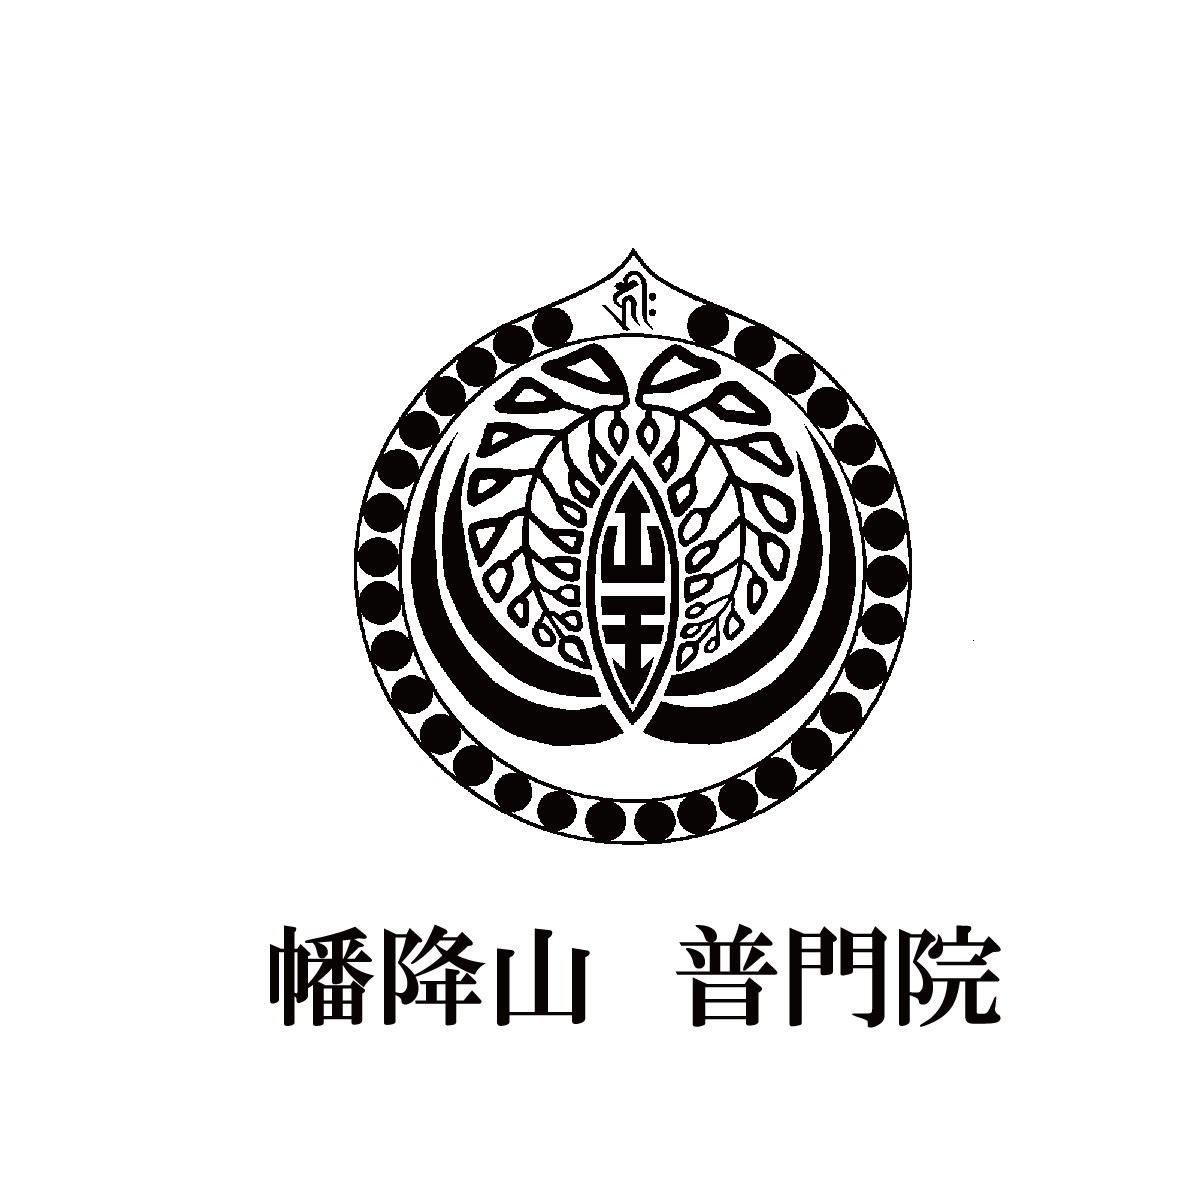 普門院のロゴ